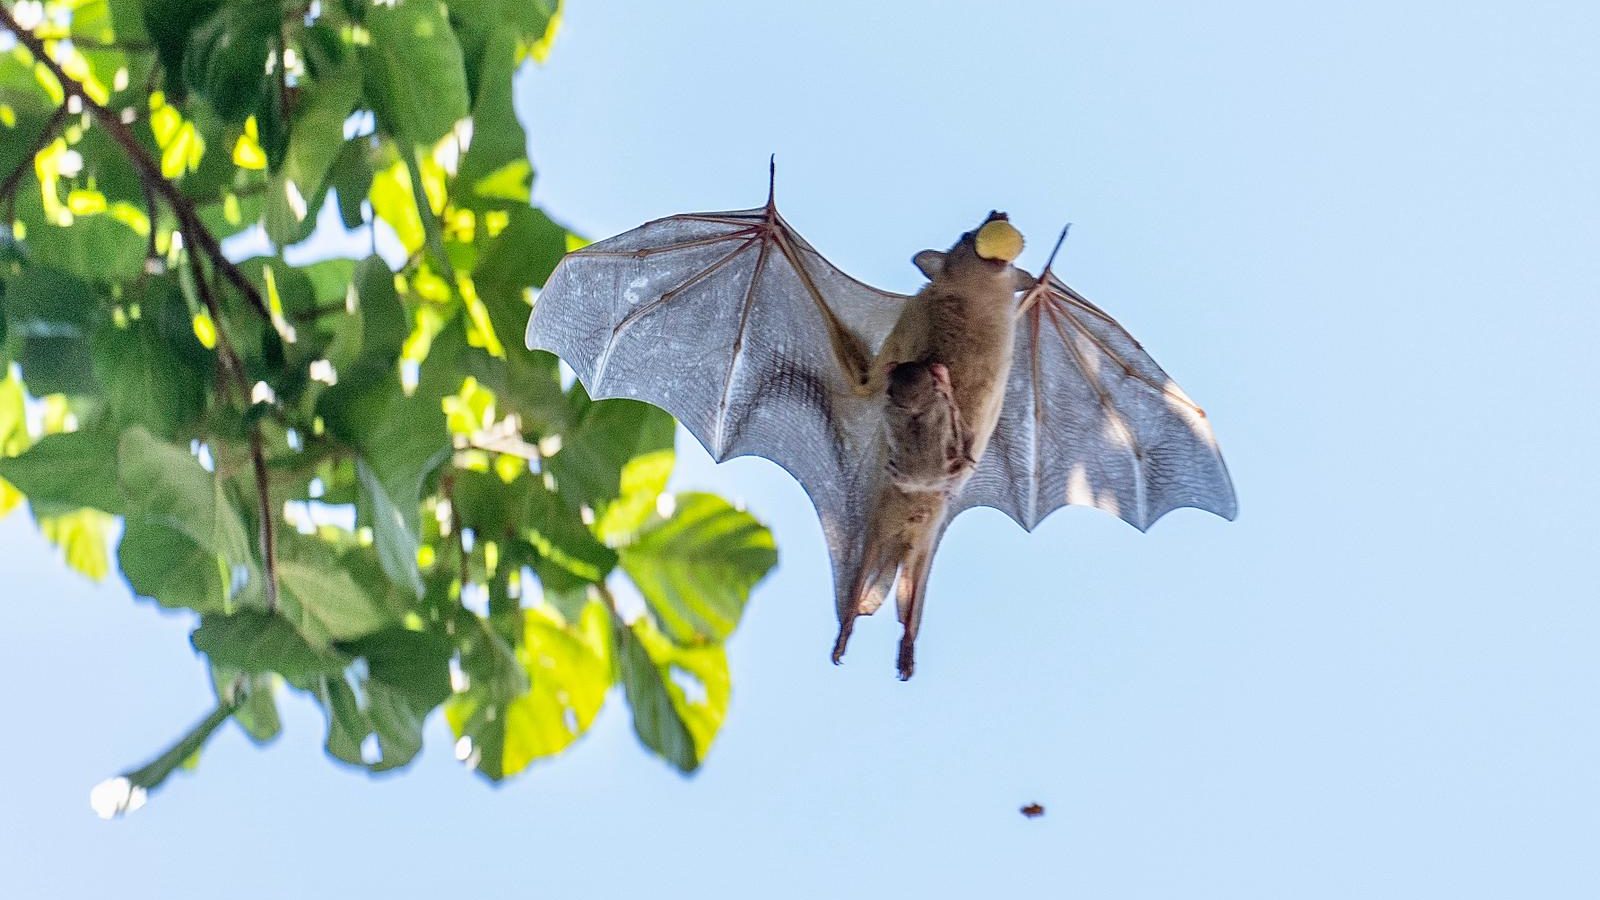 Fruit Bats Practice Social Distancing, Too